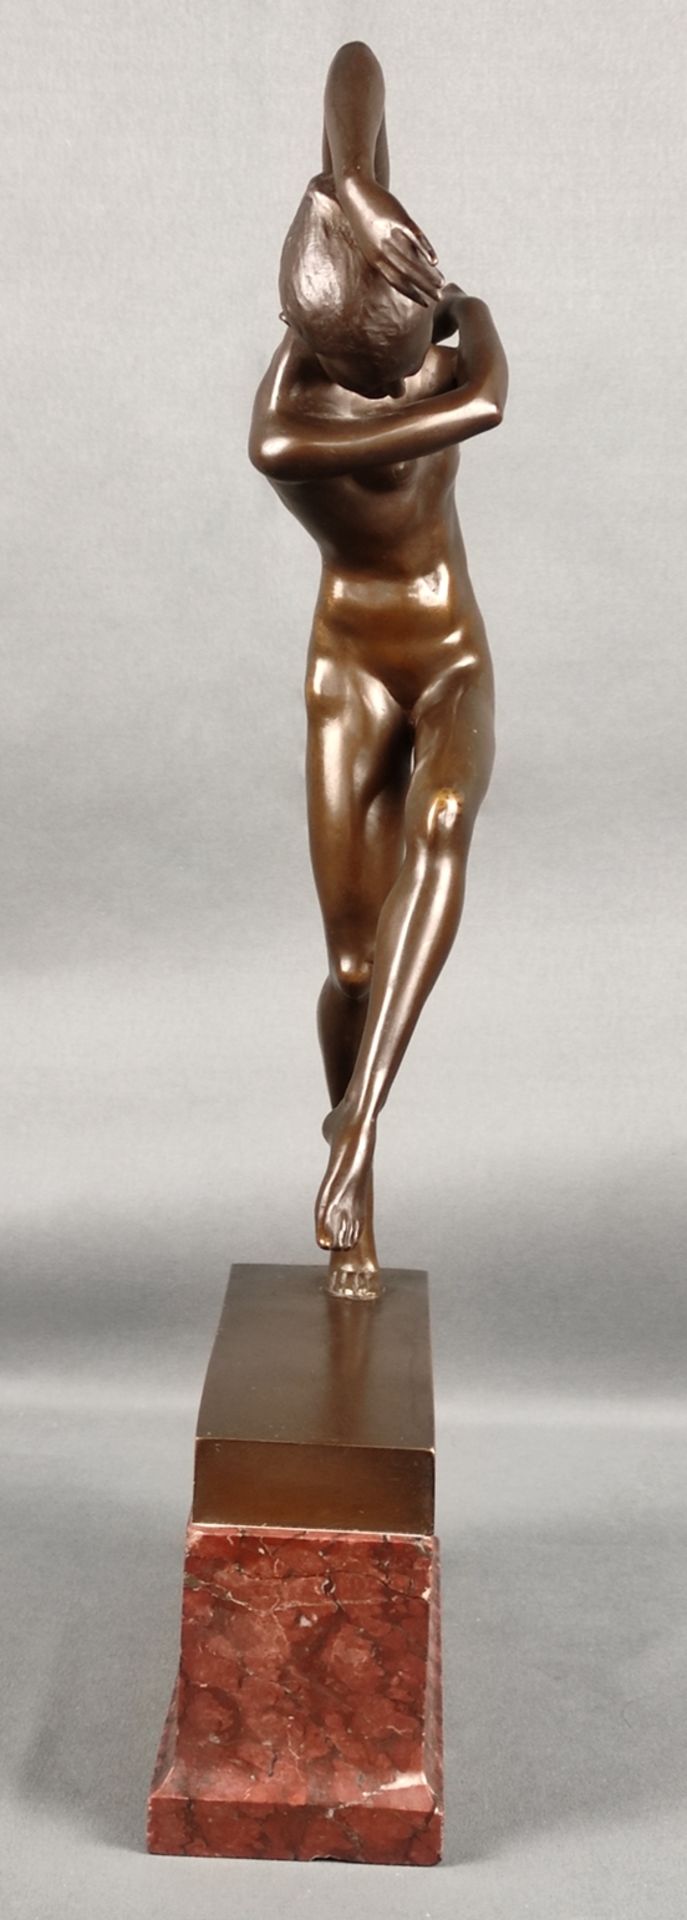 Jaray, Sandor (1870 Temeswar -1916 London) "Tänzerin", dynamische Figurenstudie auf Plinthe, Bronze - Bild 4 aus 5